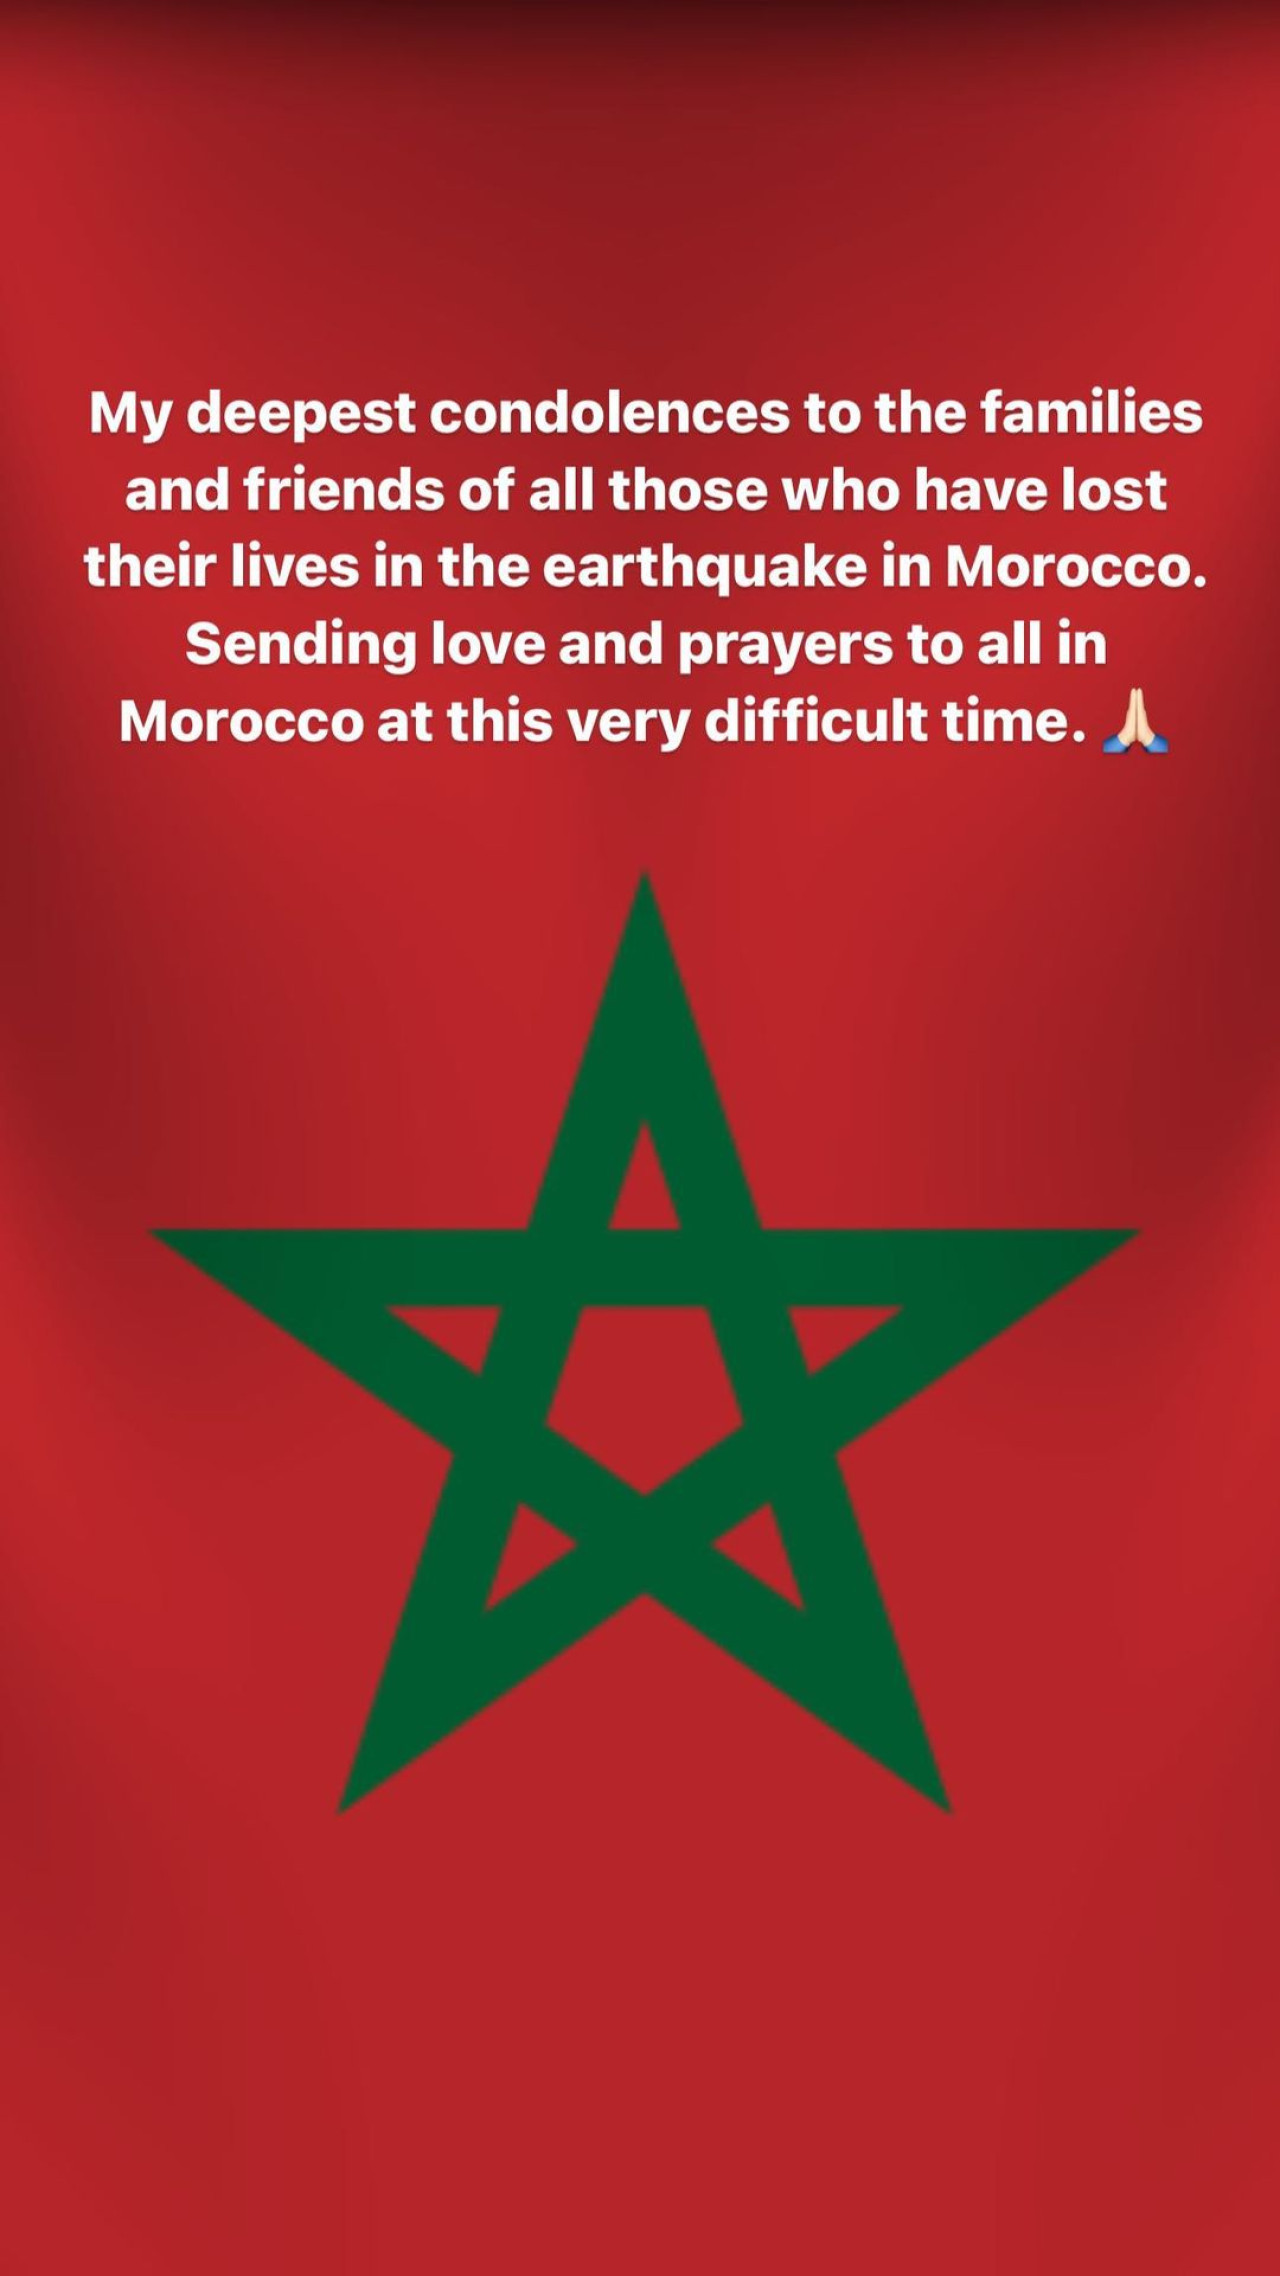 El mensaje de Cristiano Ronaldo a las víctimas por el terremoto en Marruecos. Foto: Instagram @cristiano.